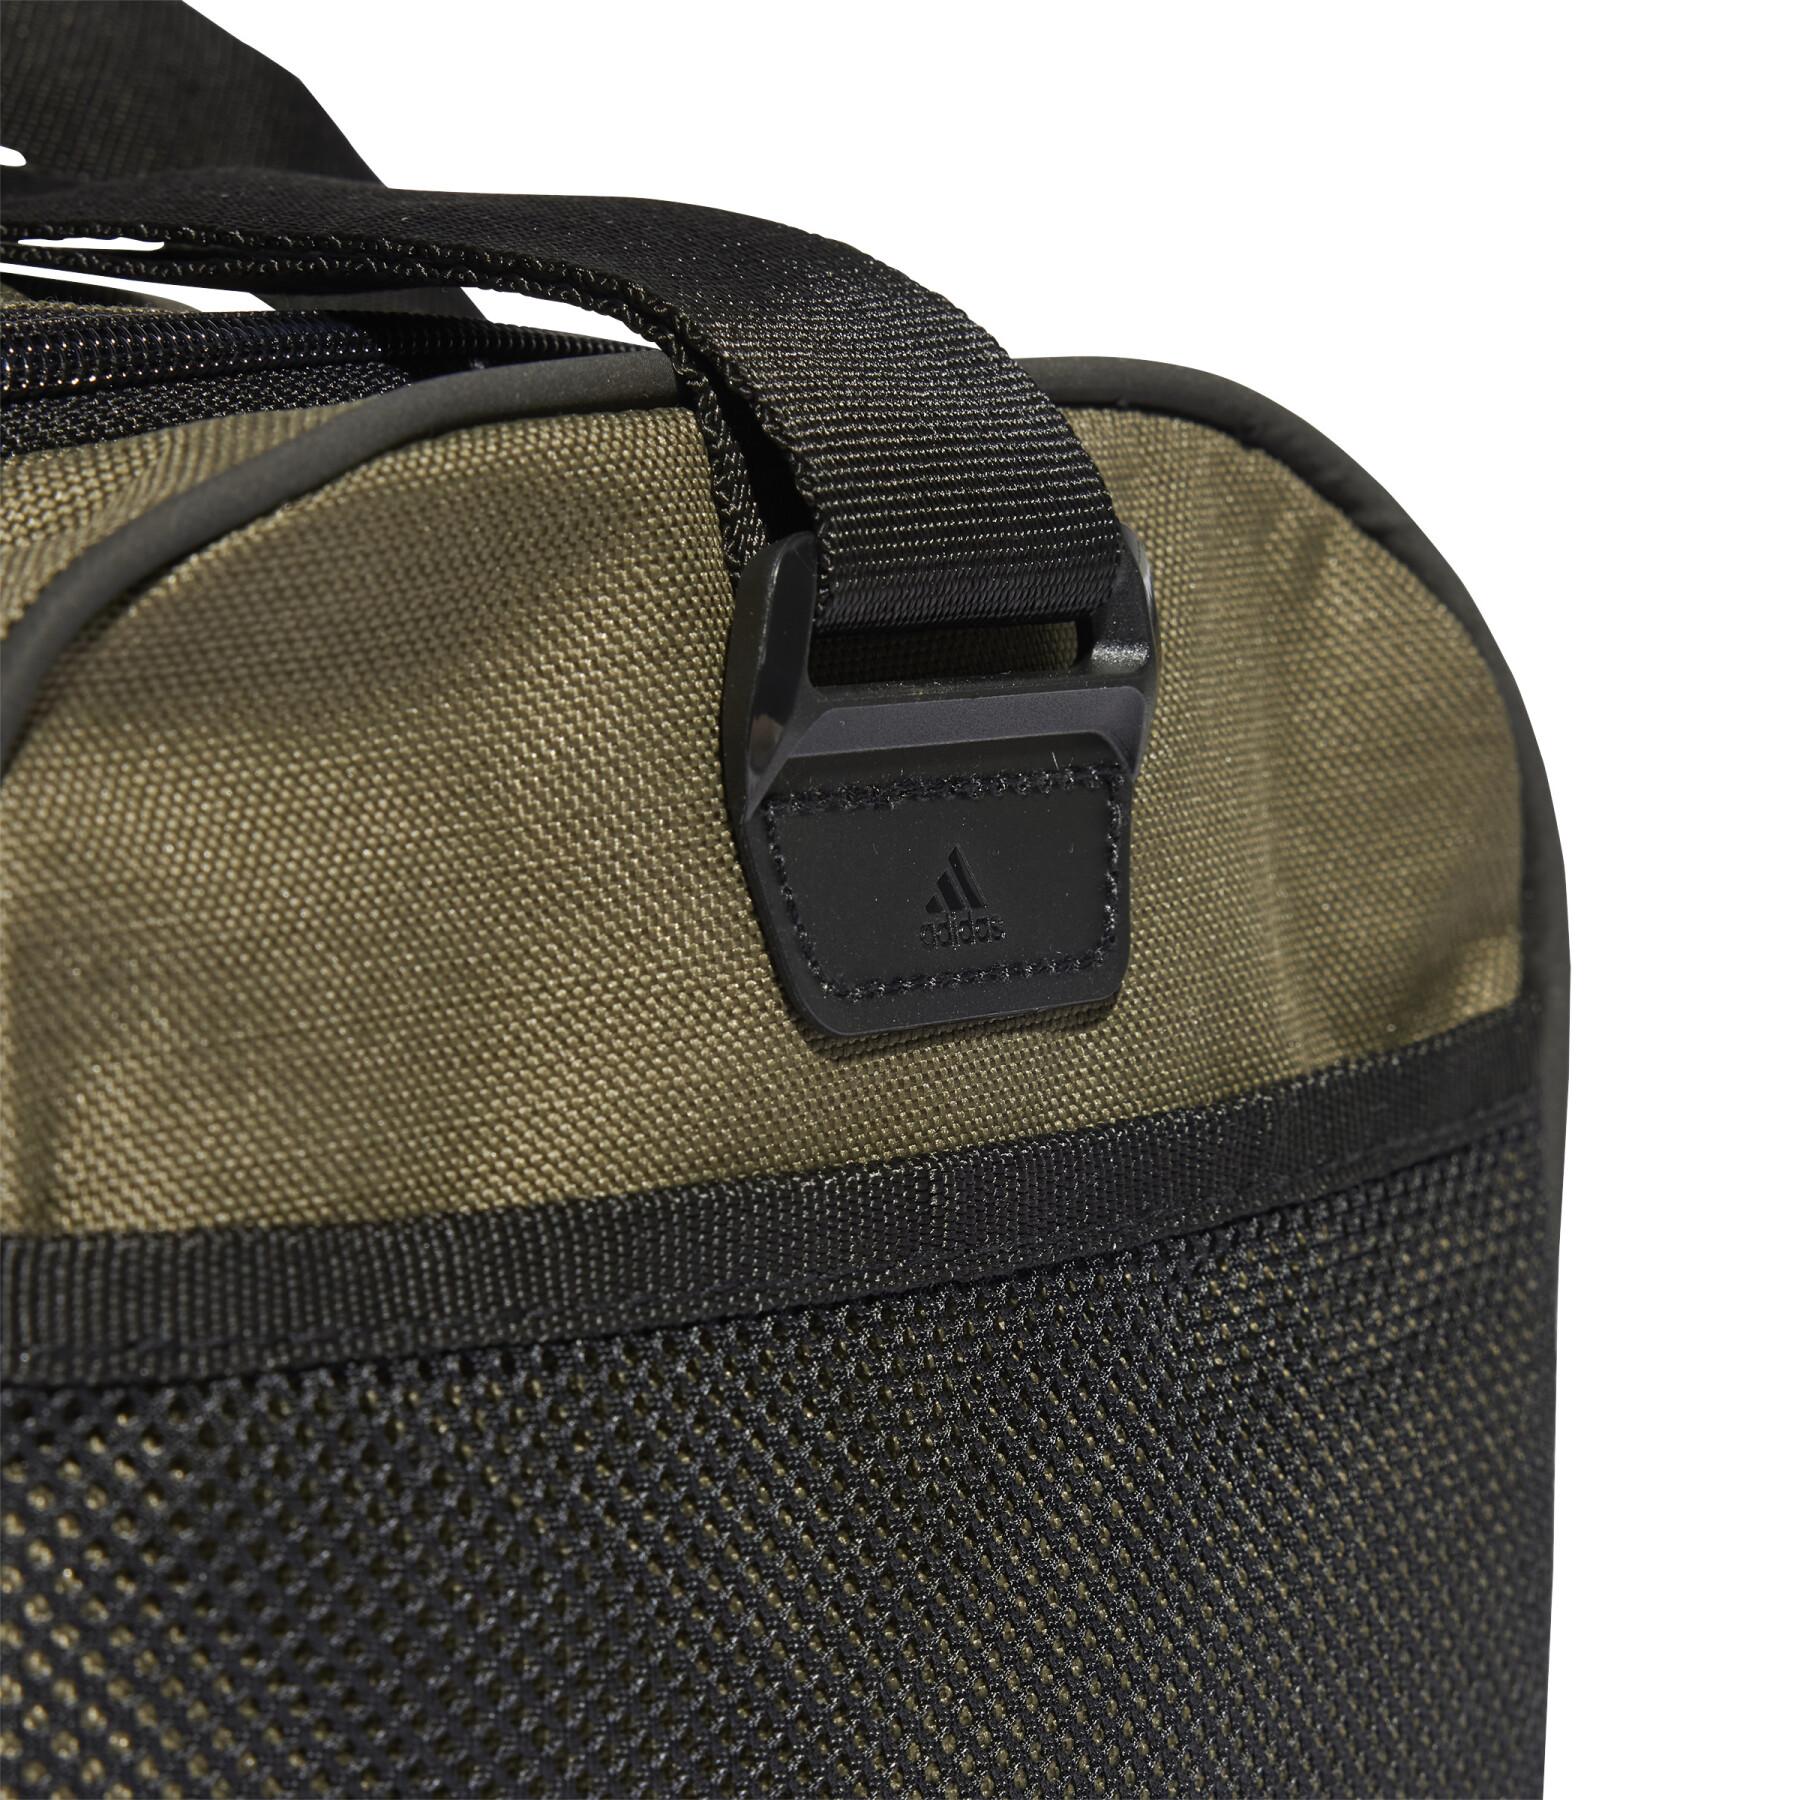 Duffle Bag medium adidas Essentials Linear